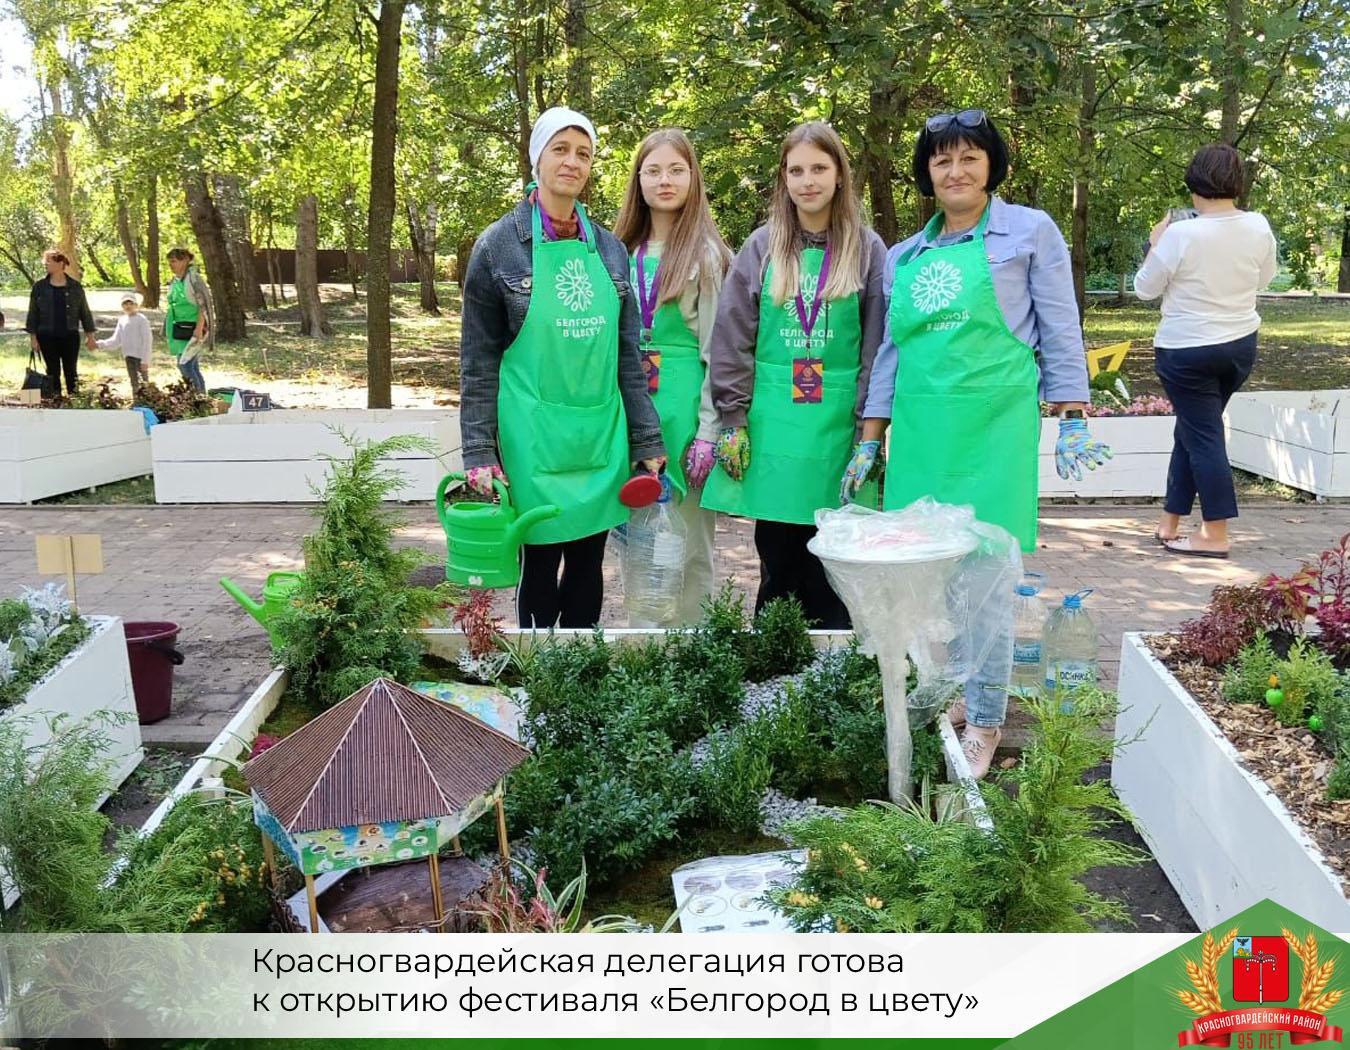 Сегодня откроется фестиваль «Белгород в цвету», а пока есть немного времени, чтобы посмотреть, как работала красногвардейская делегация..